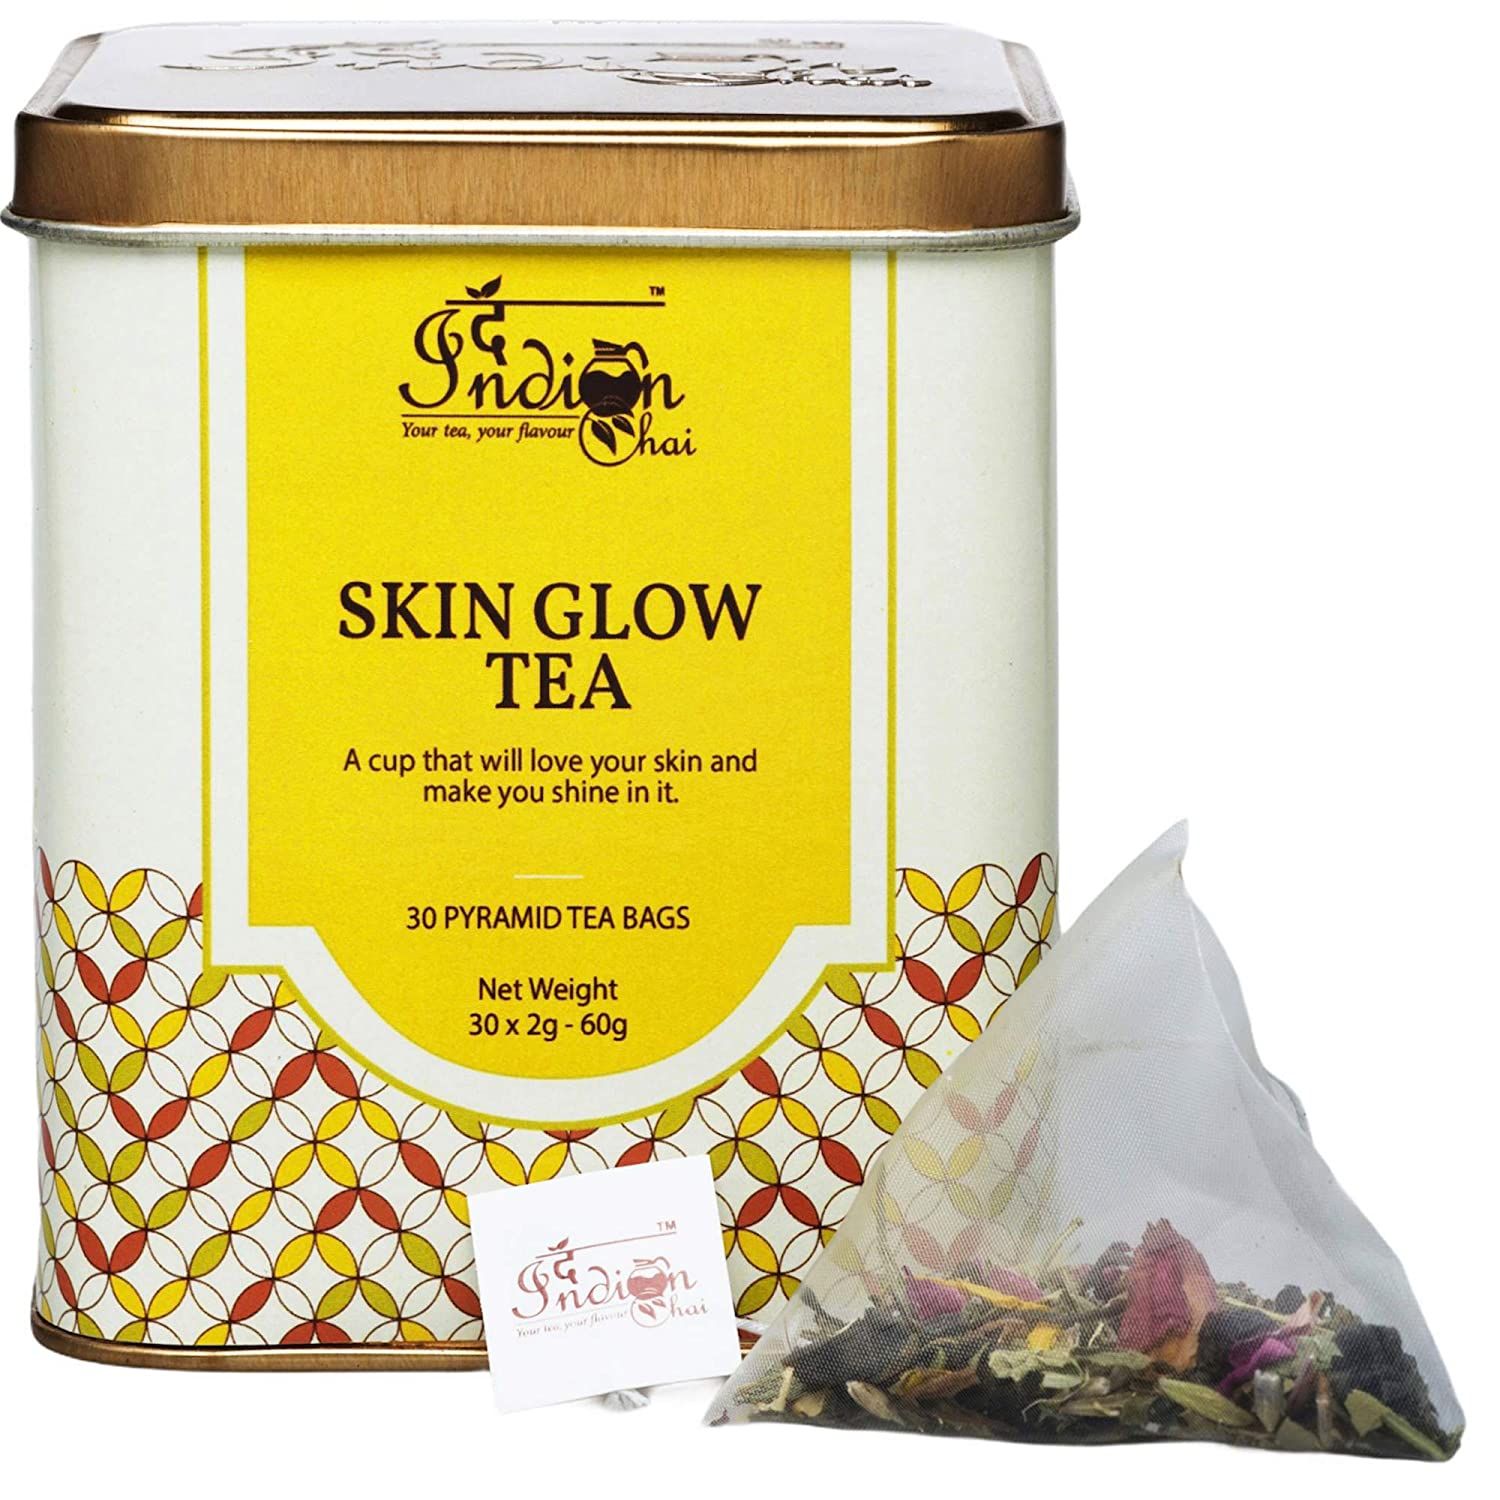 The Indian Chai Skin Glow Tea Image